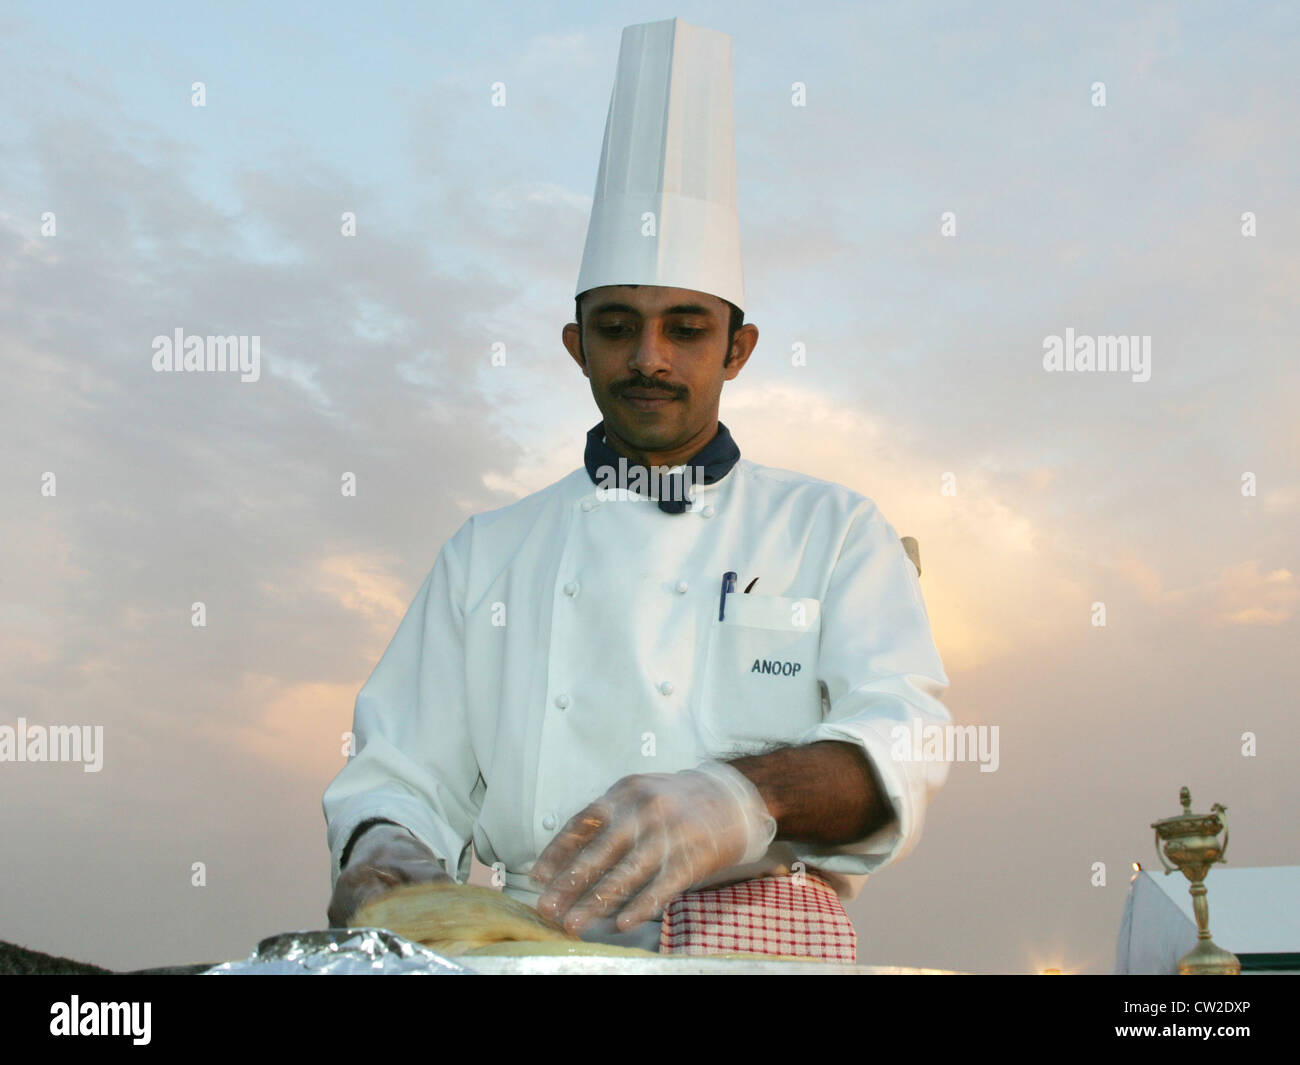 Dubaï, un chef prépare la nourriture Banque D'Images